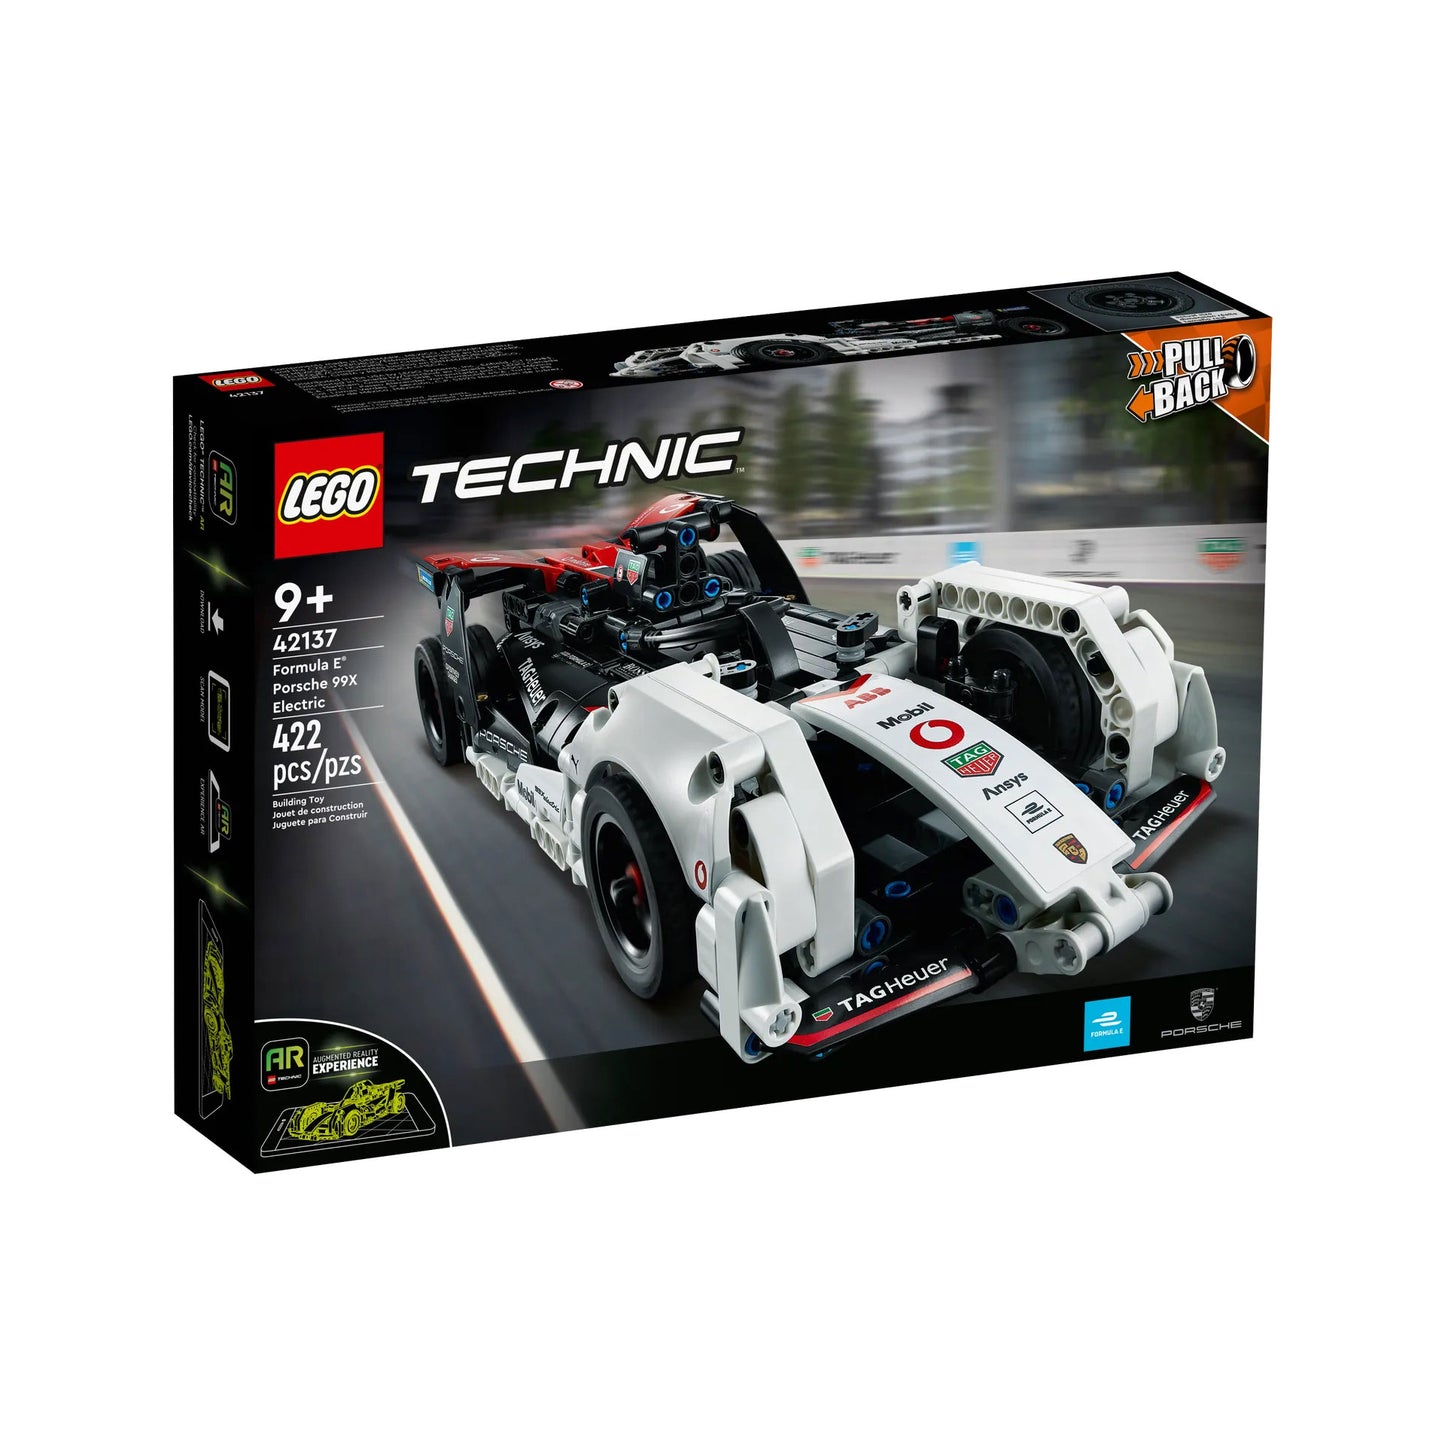 LEGO Formula E Porsche 99X